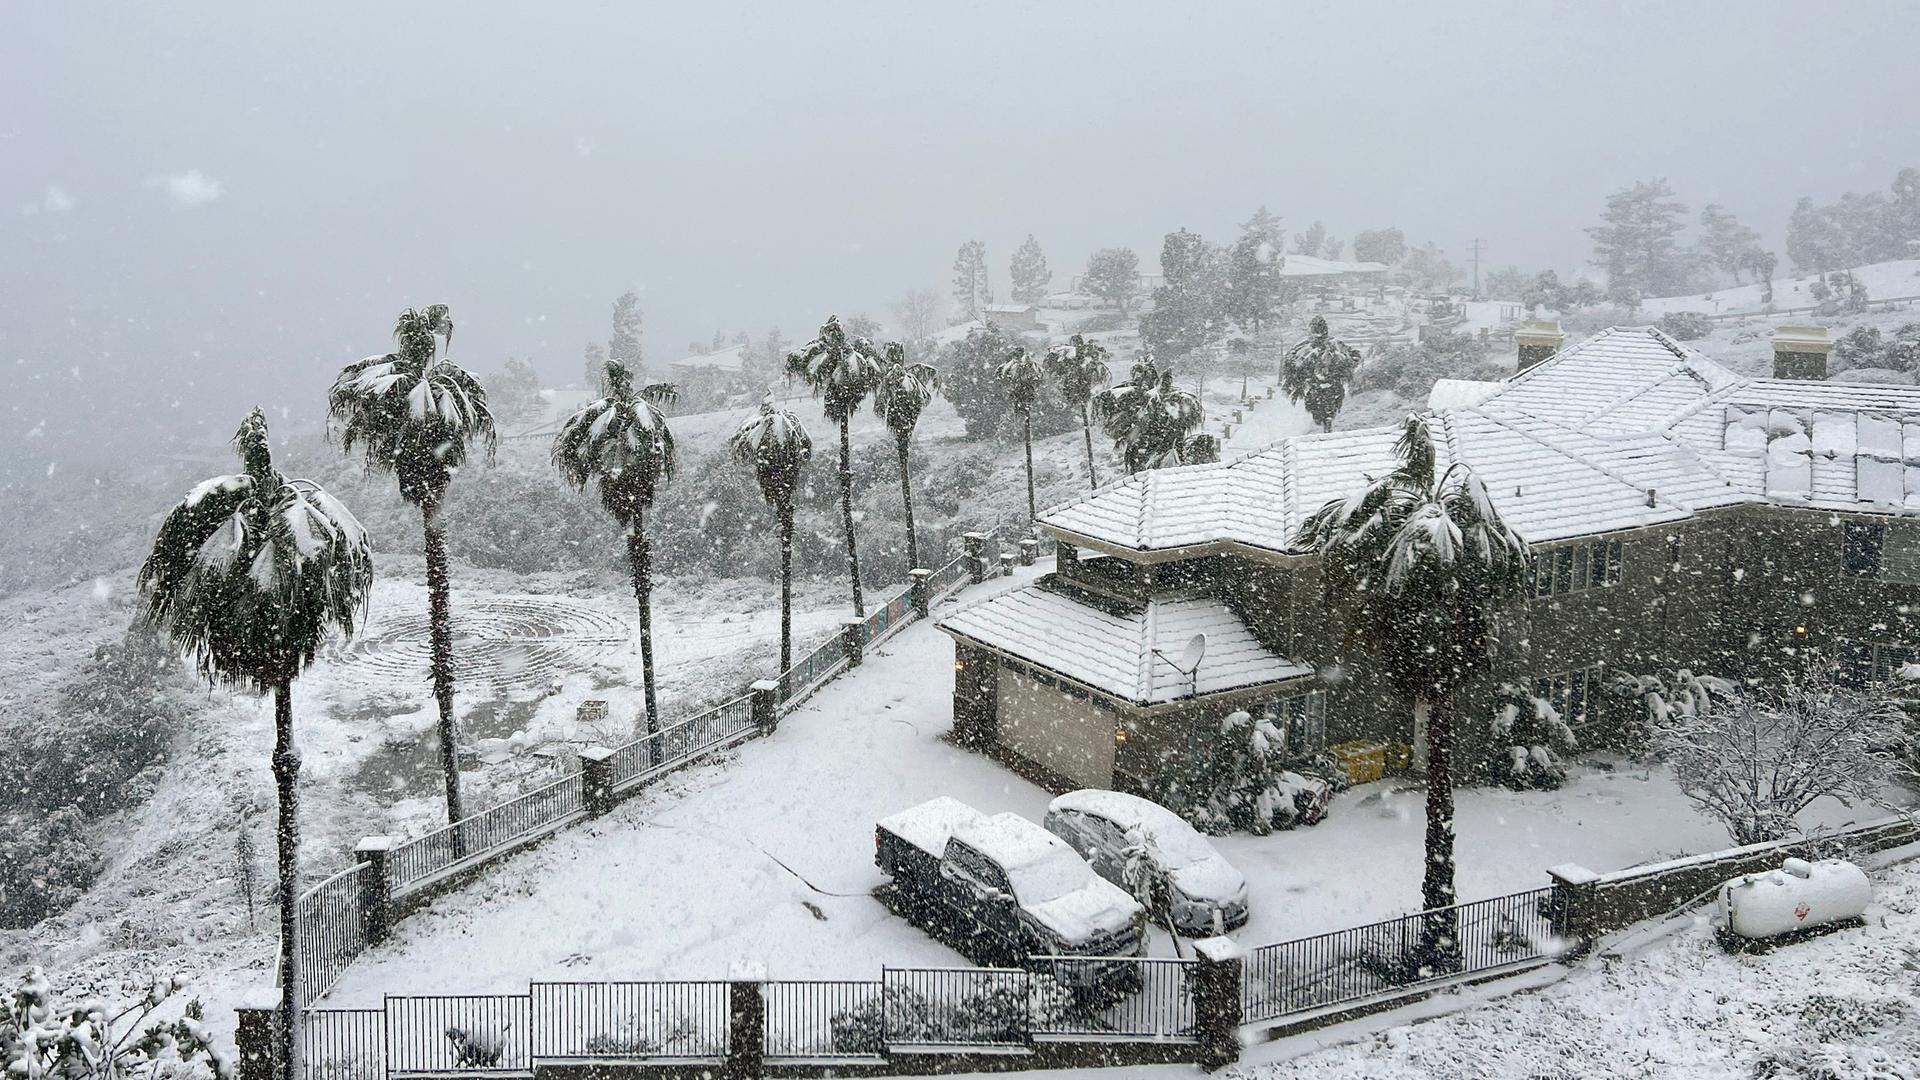 Schnee liegt auf einem Haus in Rancho Cucamonga, Kalifornien. Auch die Autos und Palmen sind von Schnee bedeckt.